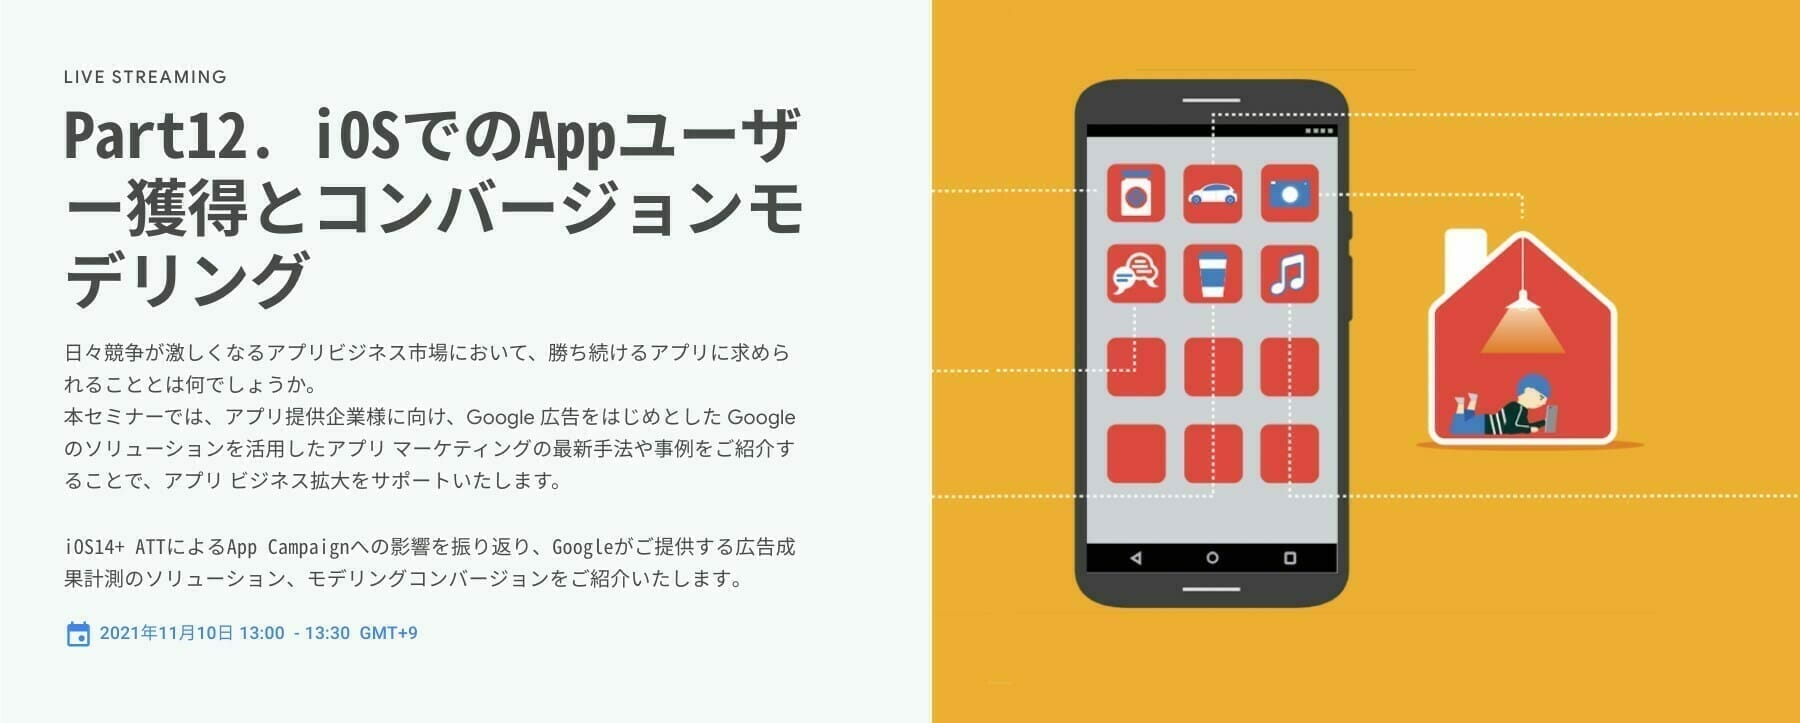 [Google 広告] Part12. iOSでのAppユーザー獲得とコンバージョンモデリング